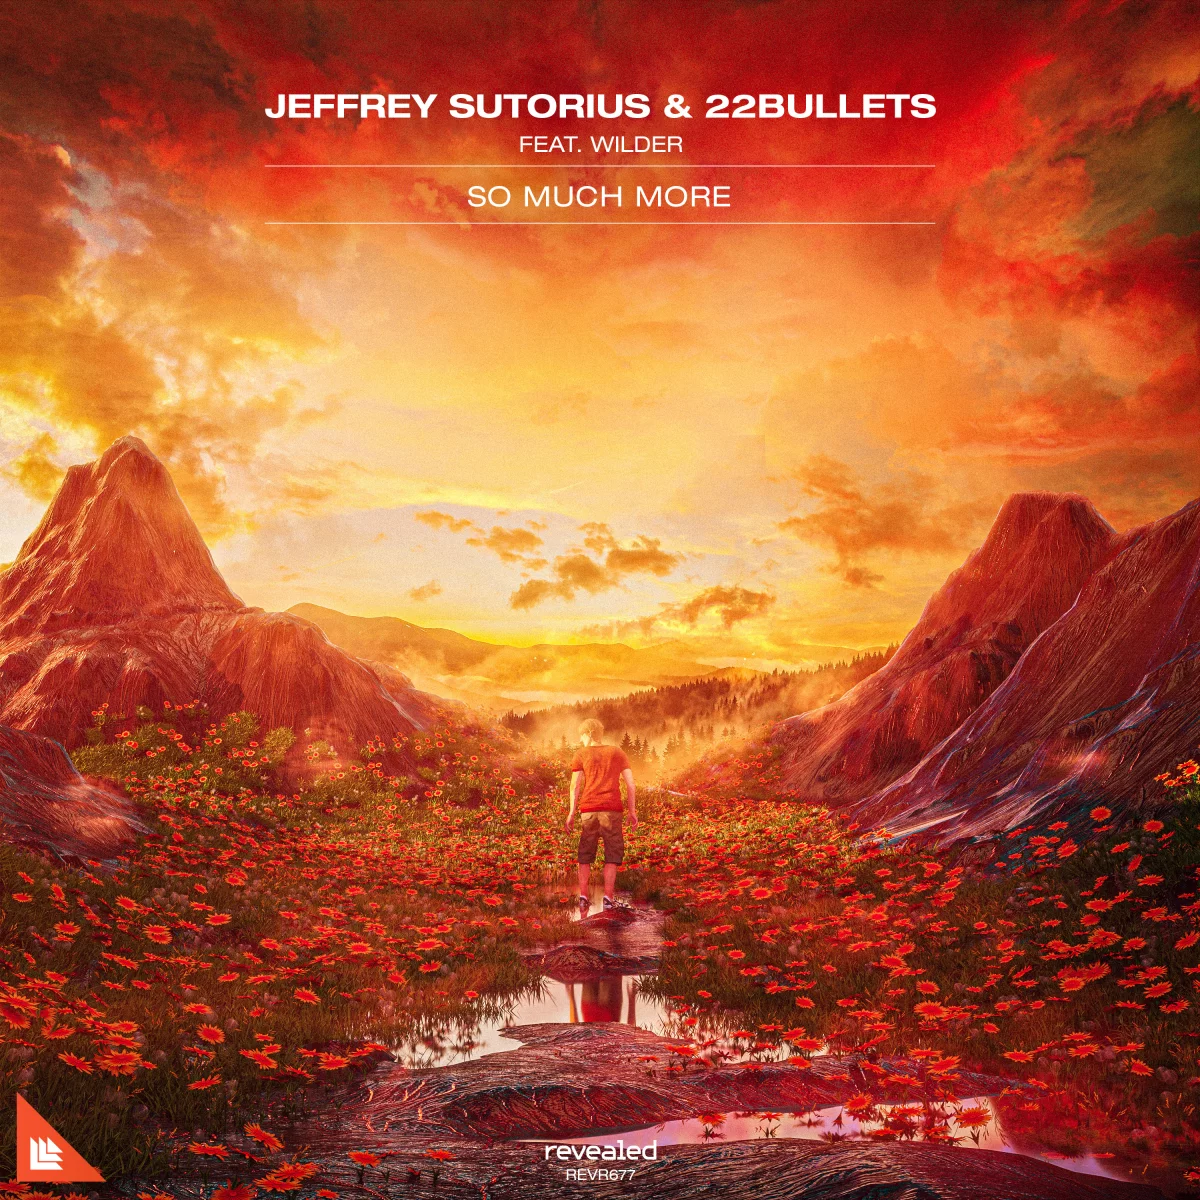 So Much More - Jeffrey Sutorius⁠ & 22Bullets⁠ feat. Wilder